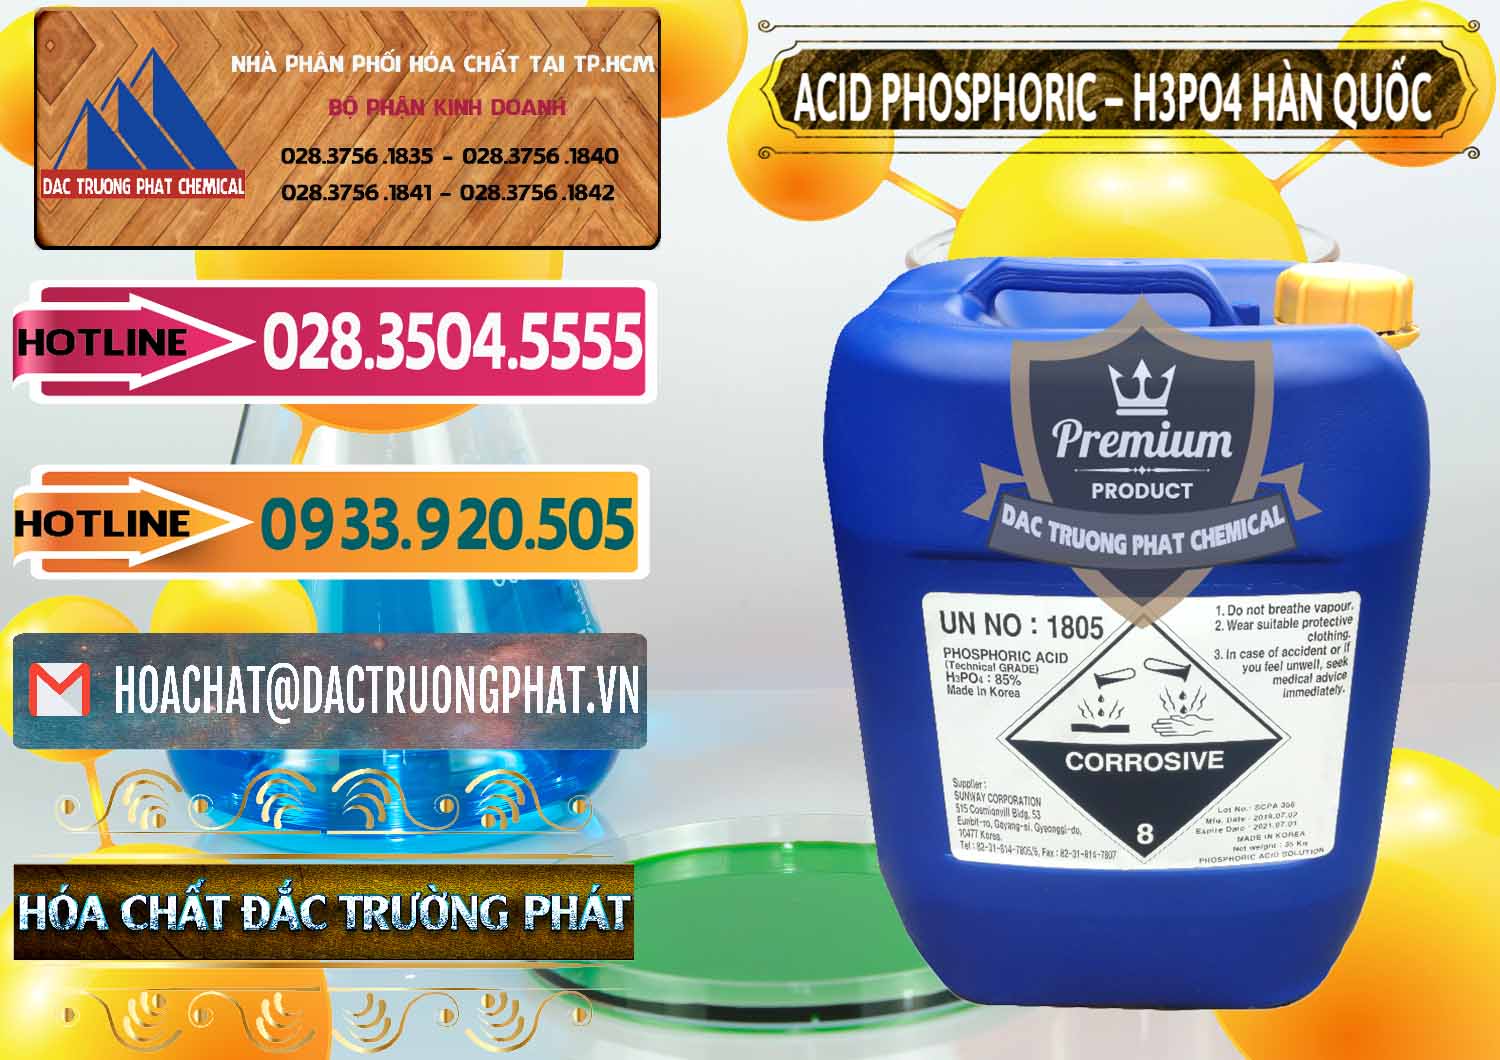 Công ty chuyên cung ứng & bán Acid Phosphoric – H3PO4 85% Can Xanh Hàn Quốc Korea - 0016 - Nơi chuyên phân phối - kinh doanh hóa chất tại TP.HCM - dactruongphat.vn